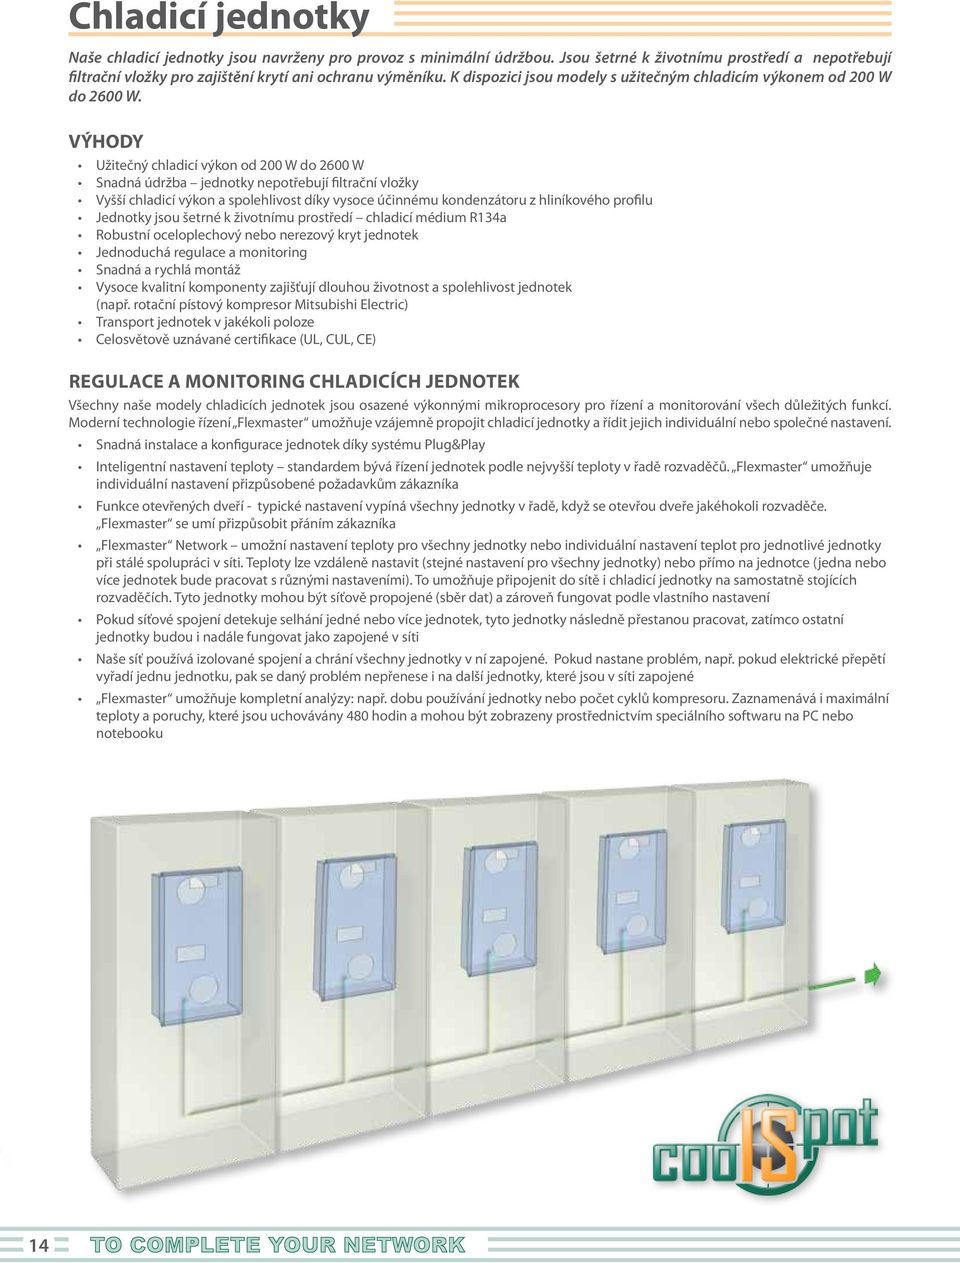 VÝHODY Užitečný chladicí výkon od W do 26 W Snadná údržba jednotky nepotřebují filtrační vložky Vyšší chladicí výkon a spolehlivost díky vysoce účinnému kondenzátoru z hliníkového profilu Jednotky